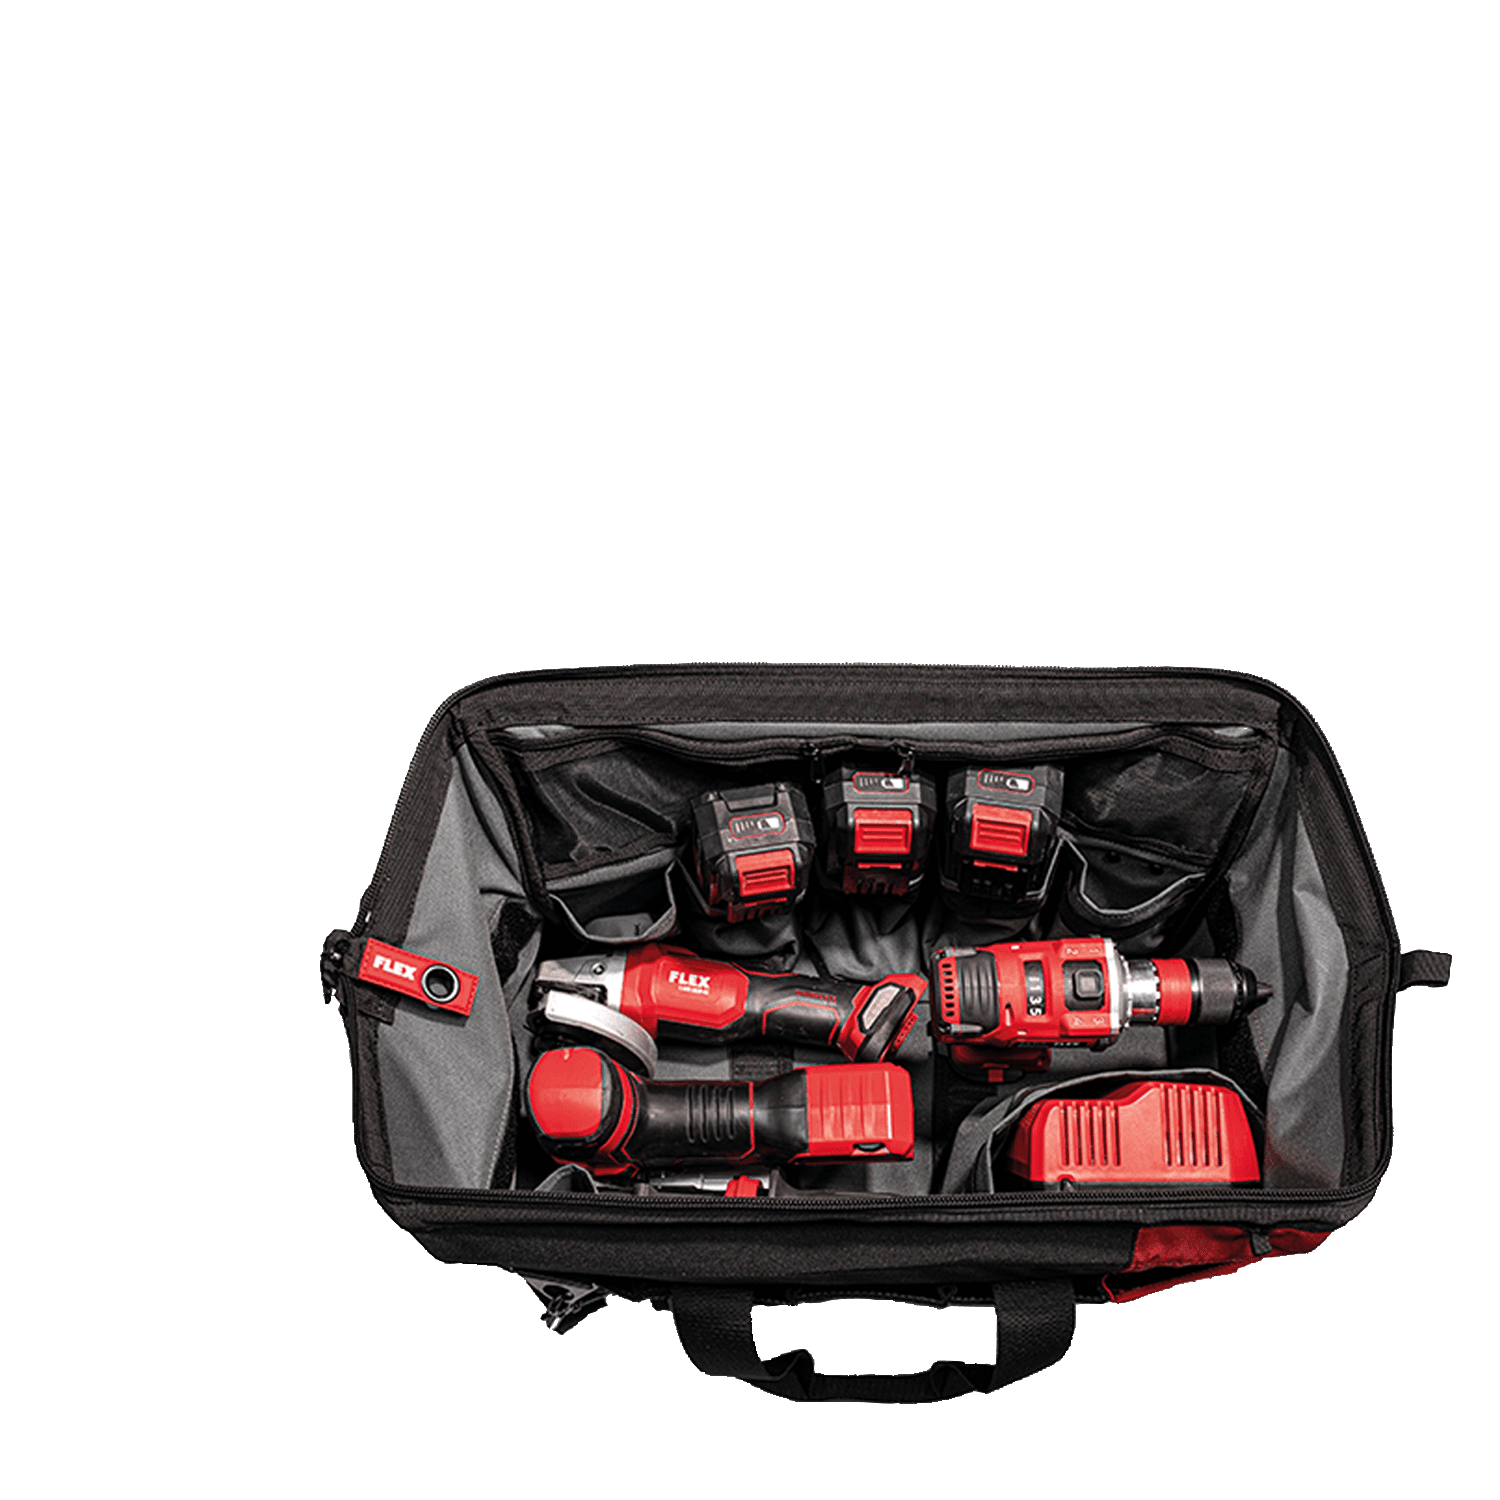 Brašna FLEXPACK s různým akumulátorovým nářadím FLEX a nabíječkou